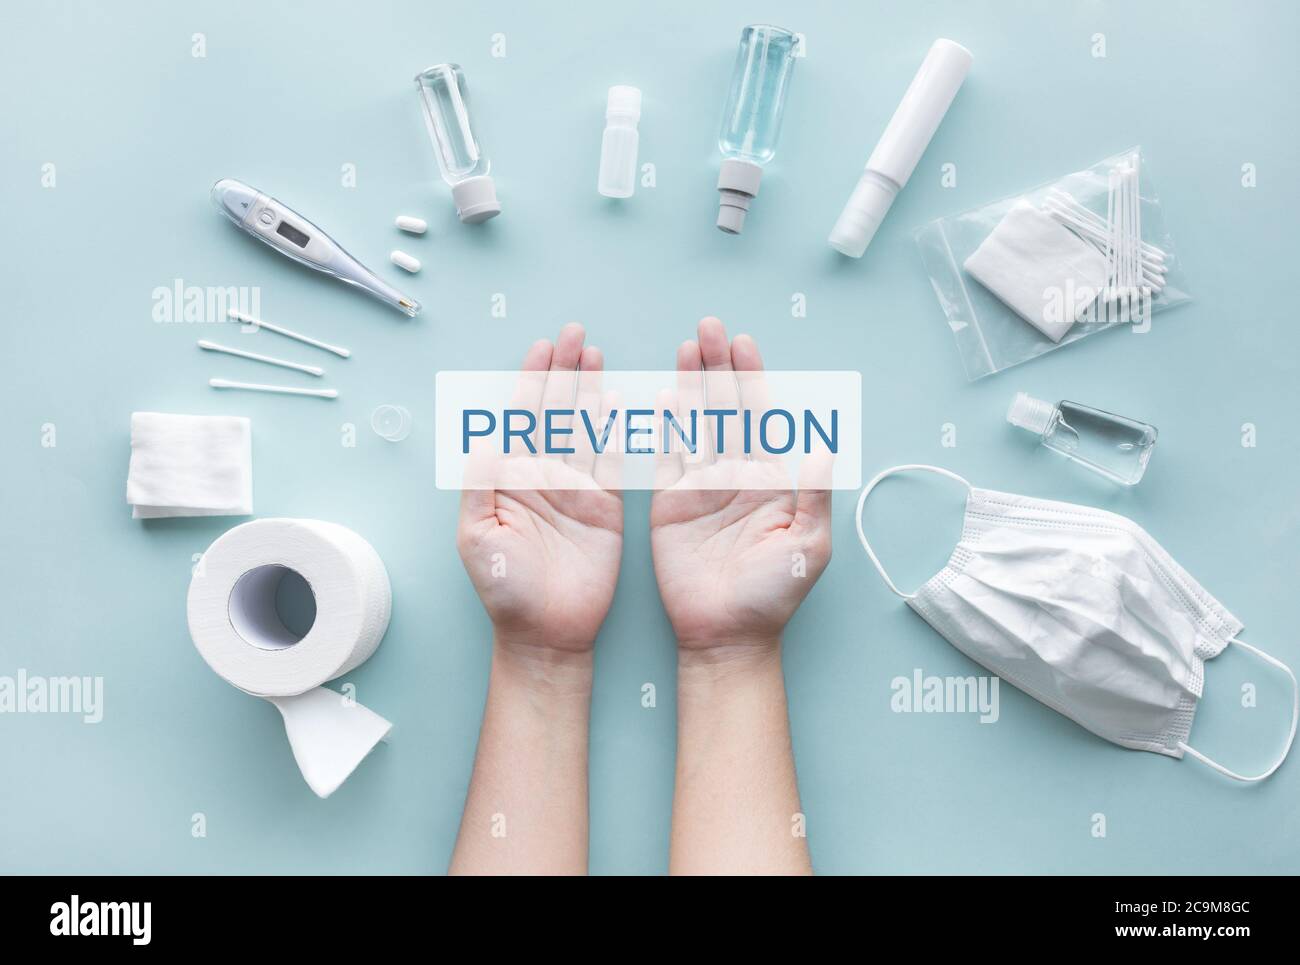 Prävention und schützen Sie sich Konzepte auf Coronavirus ( covid-19 ) Ausbruchsituation.medizinische Versorgung.Körperpflege.Waschen und Reinigen Ihrer ha Stockfoto